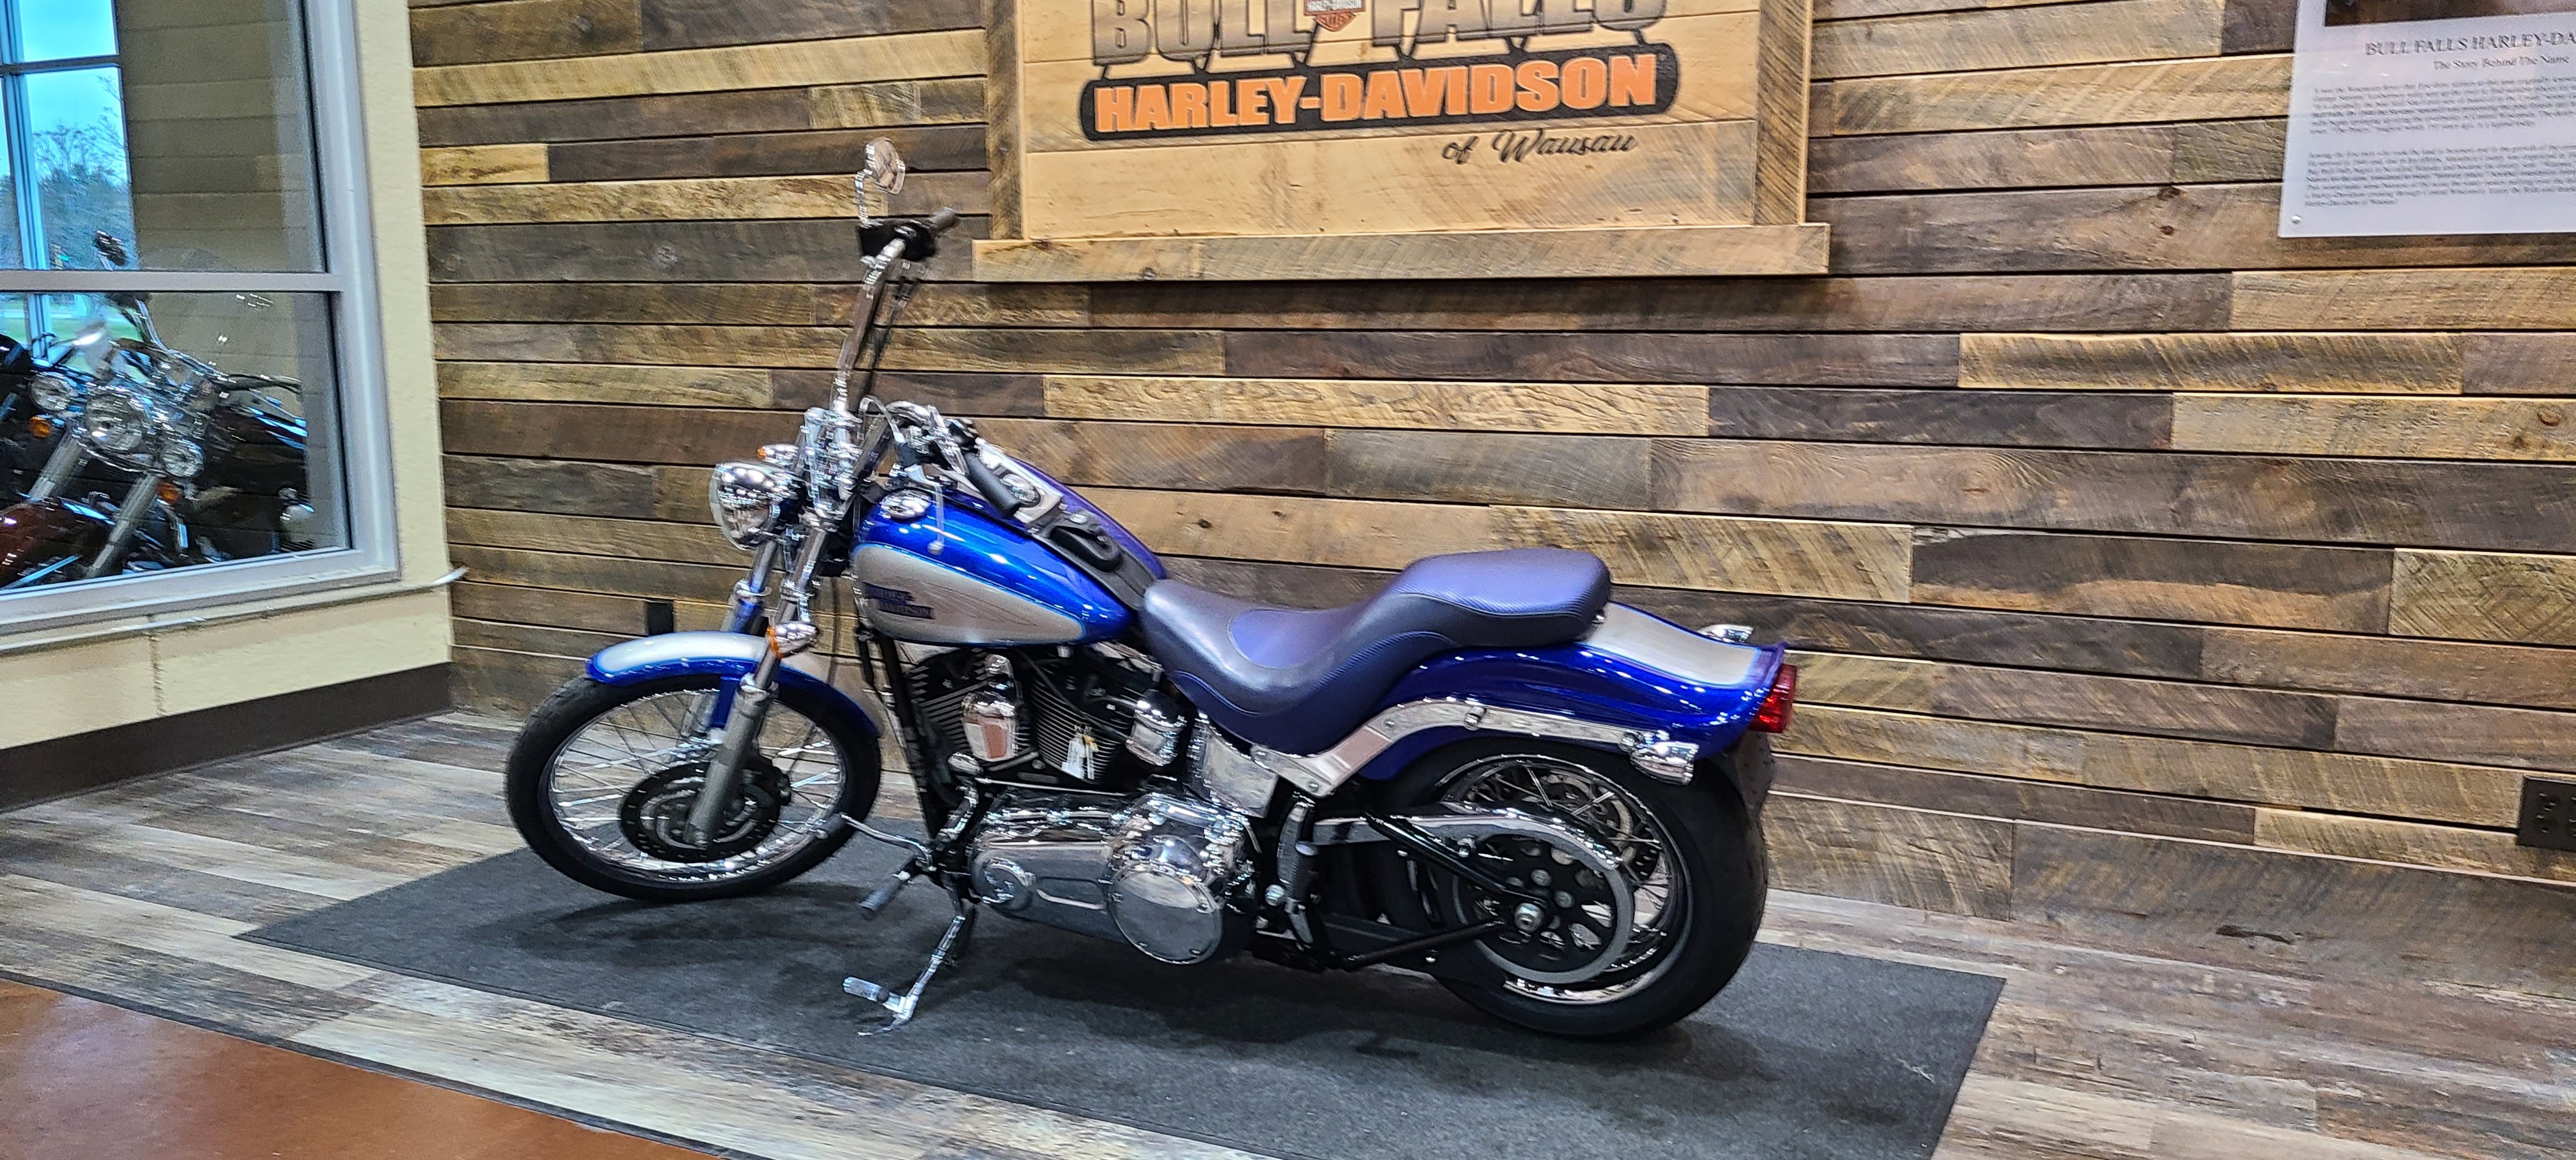 2009 Harley-Davidson Softail Custom at Bull Falls Harley-Davidson